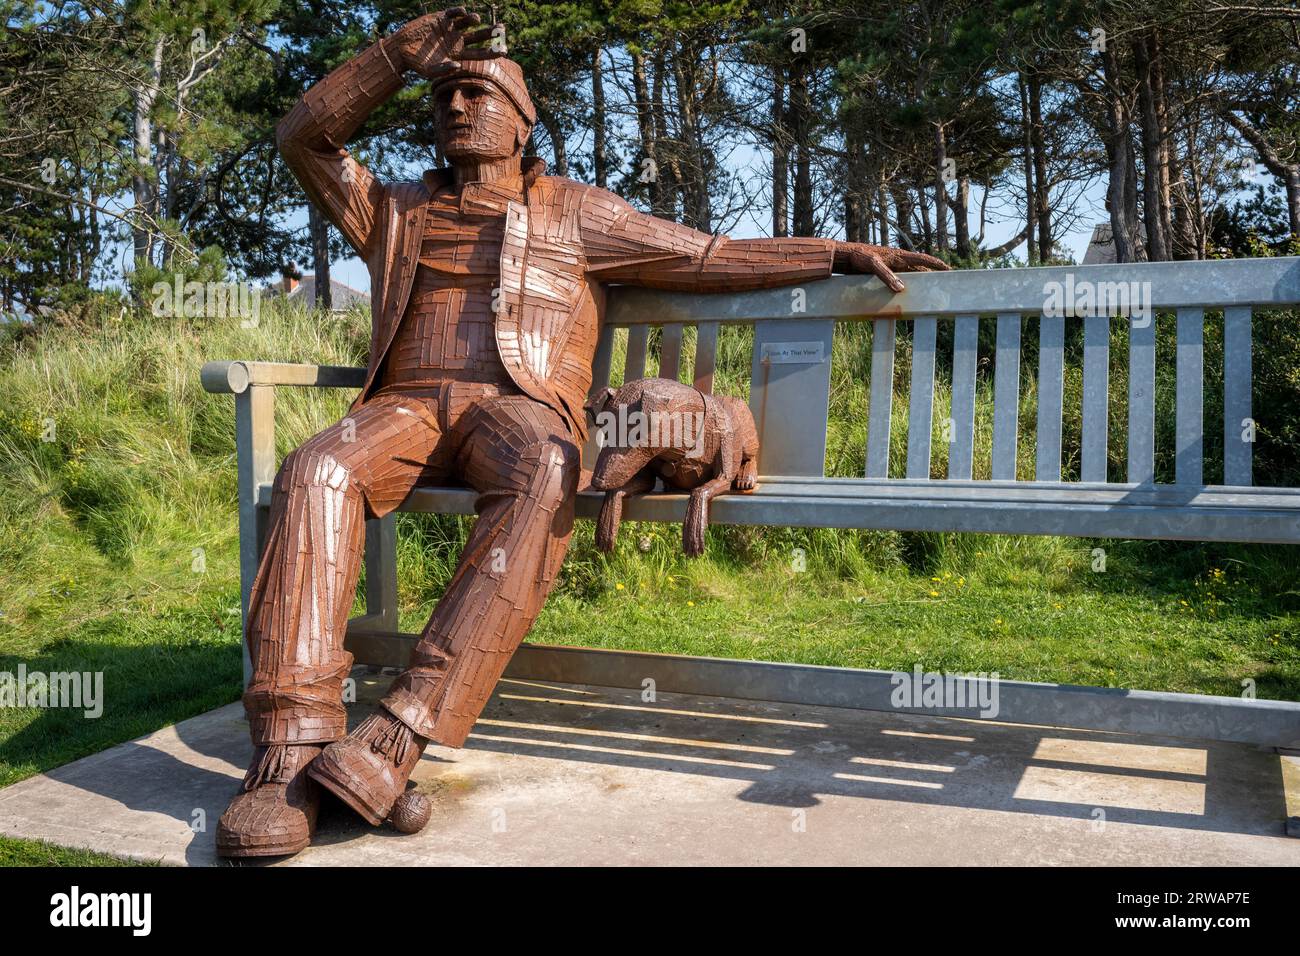 La sculpture en acier populaire de «un homme et son chien», Silloth, Cumbria, Royaume-Uni Banque D'Images